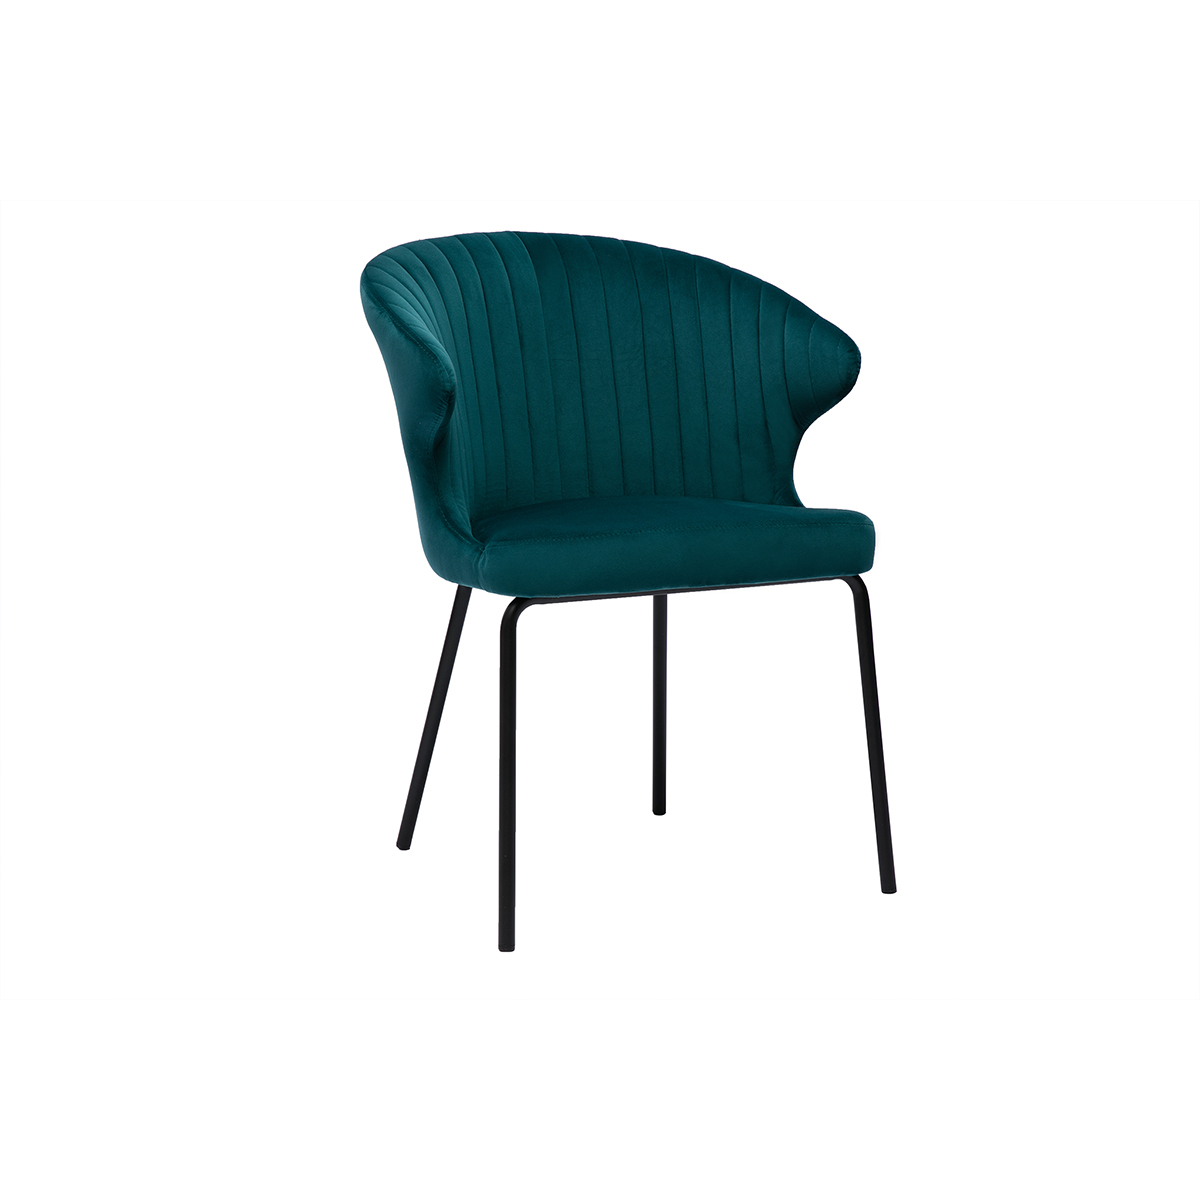 Chaise design en tissu velours gaufré bleu pétrole et métal noir REQUIEM vue1